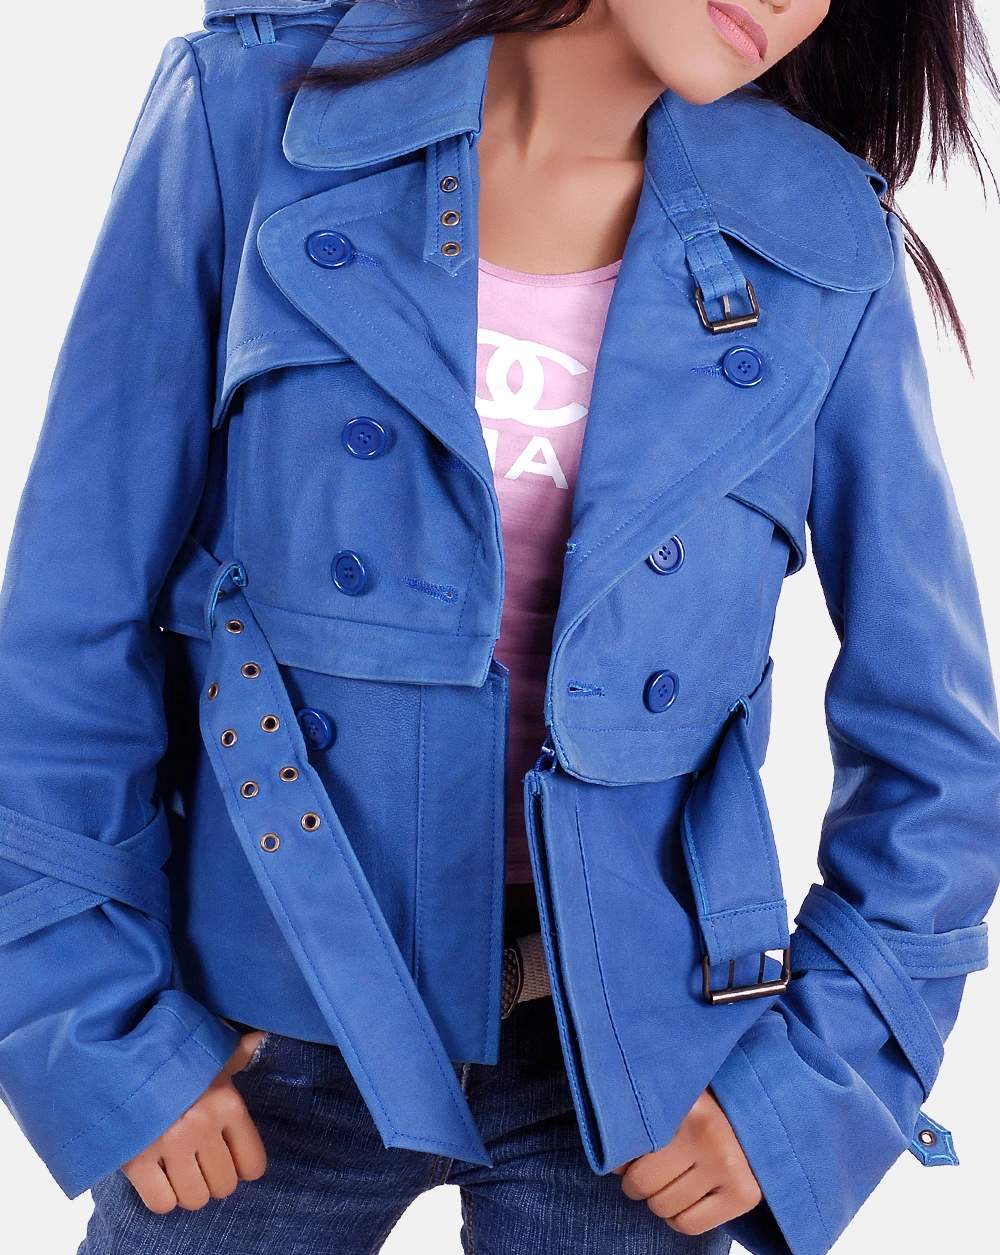 Ruby women leather jacket blue